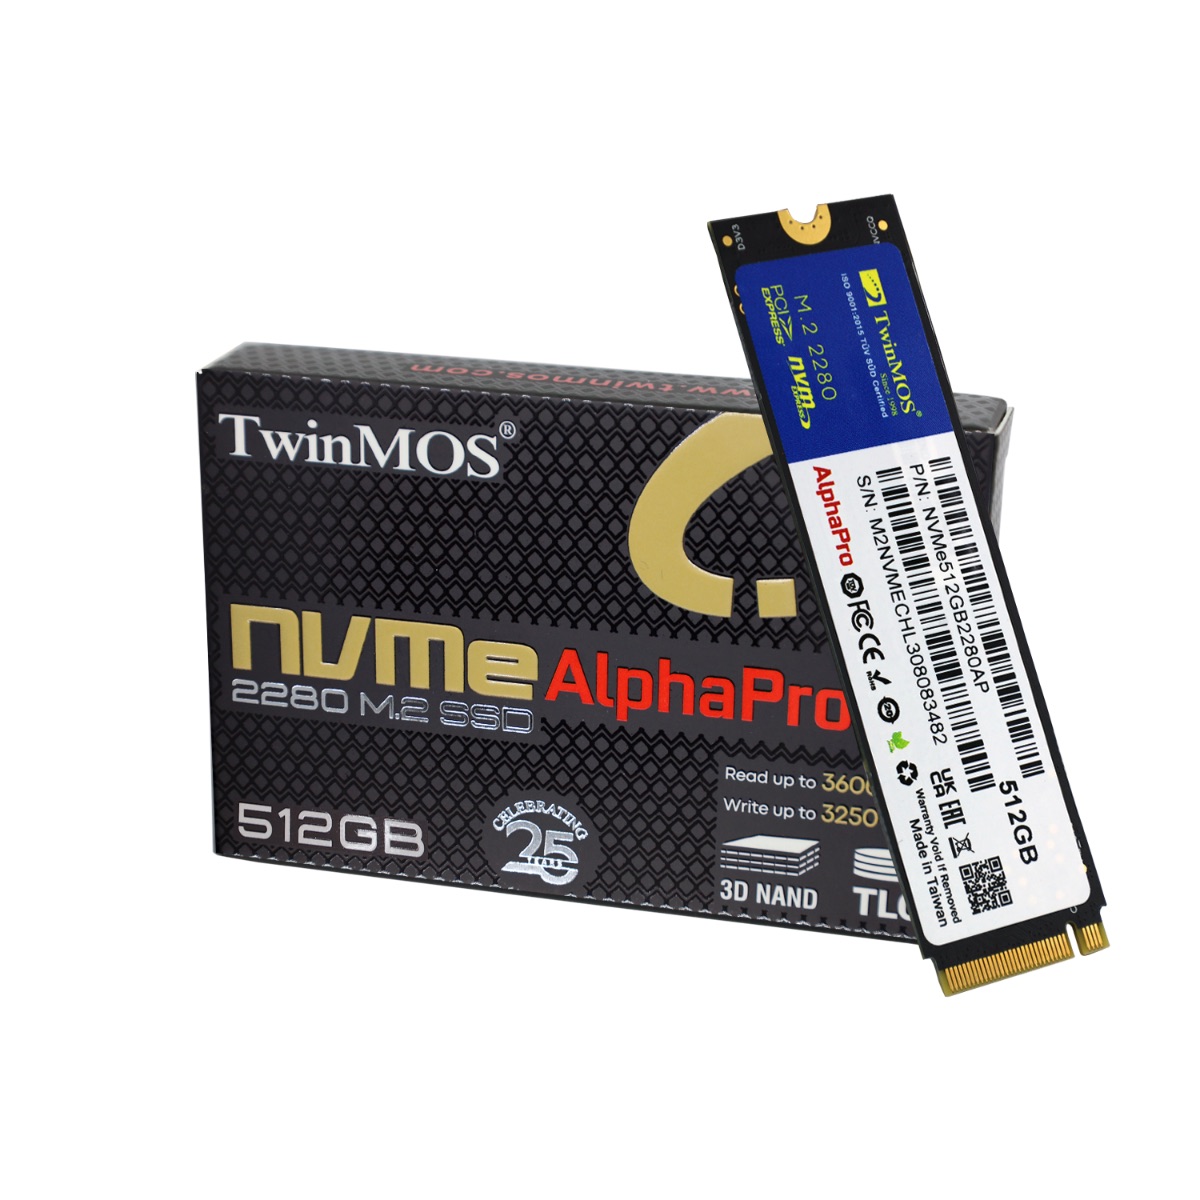 TWINMOS 512GB 3600/3250Mb/s M2 PCIE GEN3 NVME SSD NVMe512GB2280AP 3D-NAND